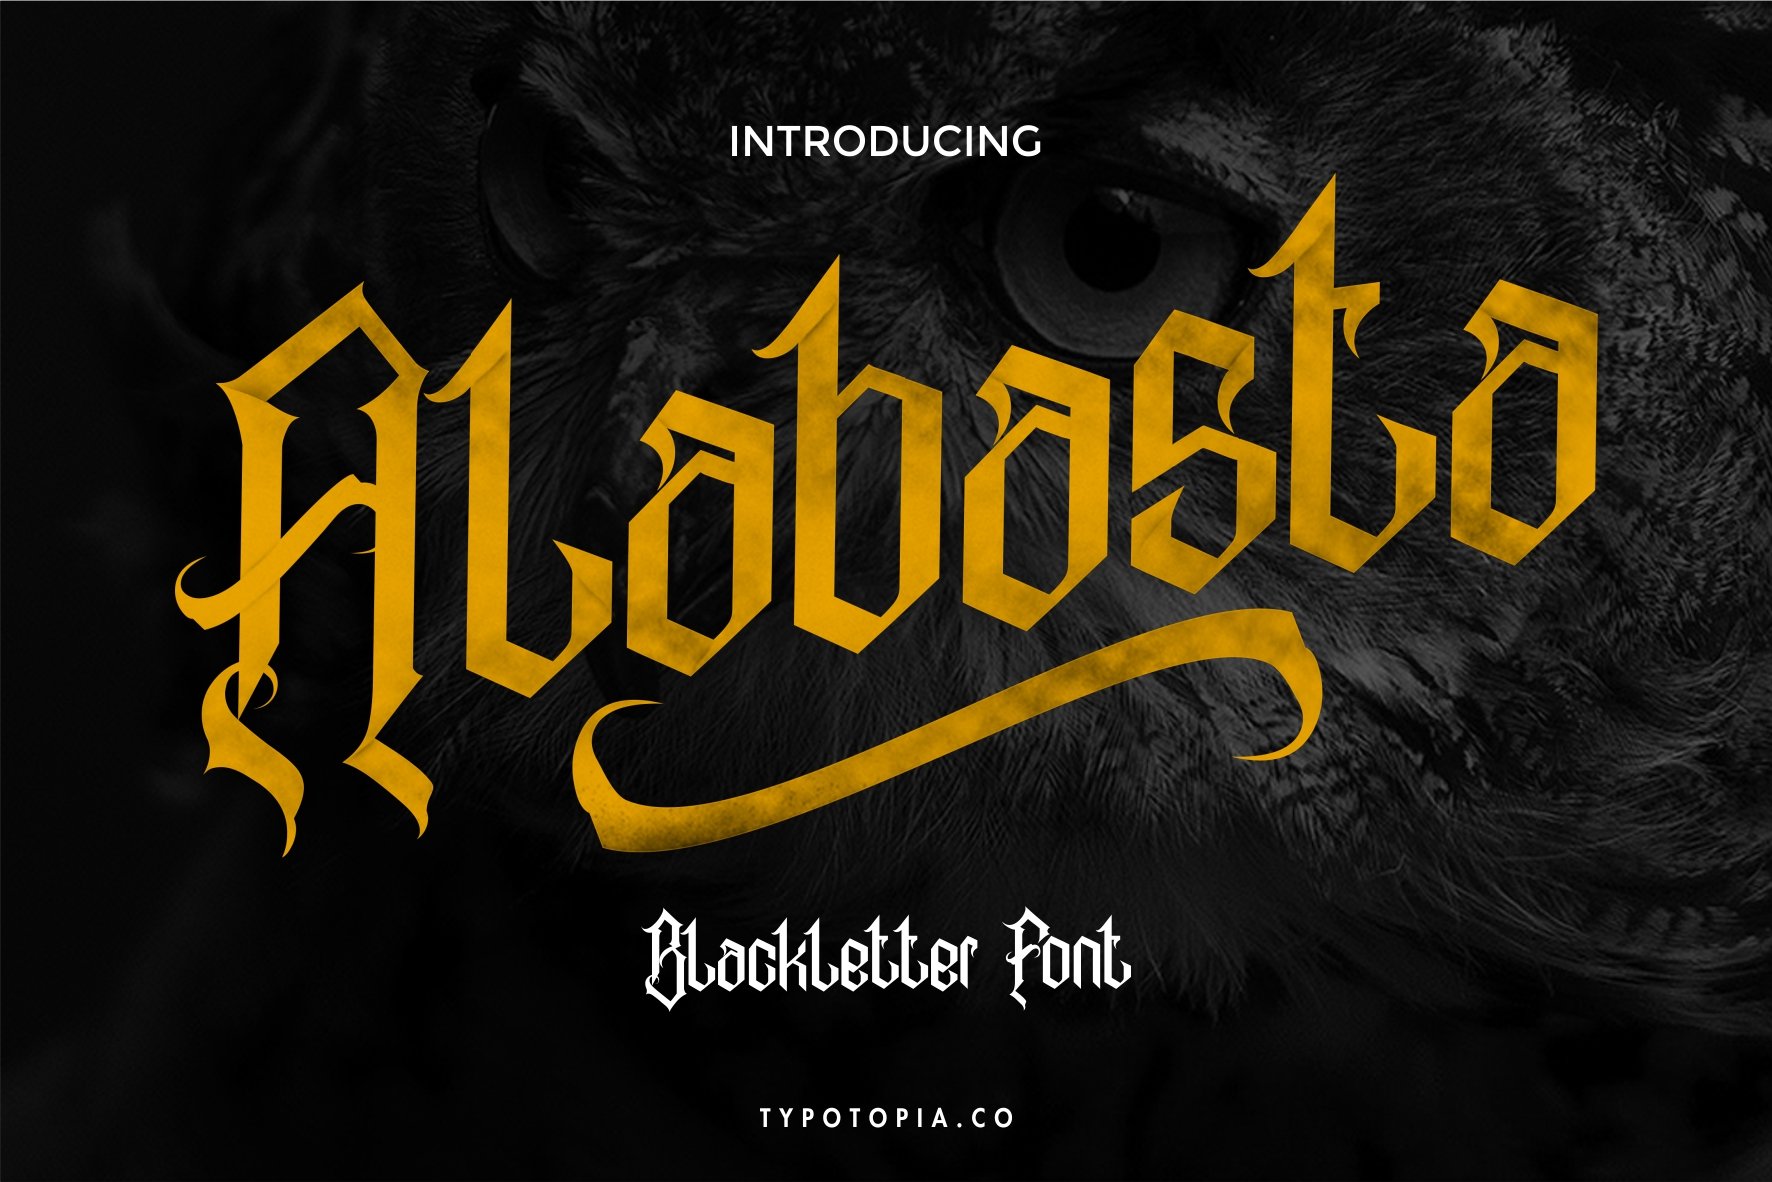 Alabasta - The Blackletter Font cover image.